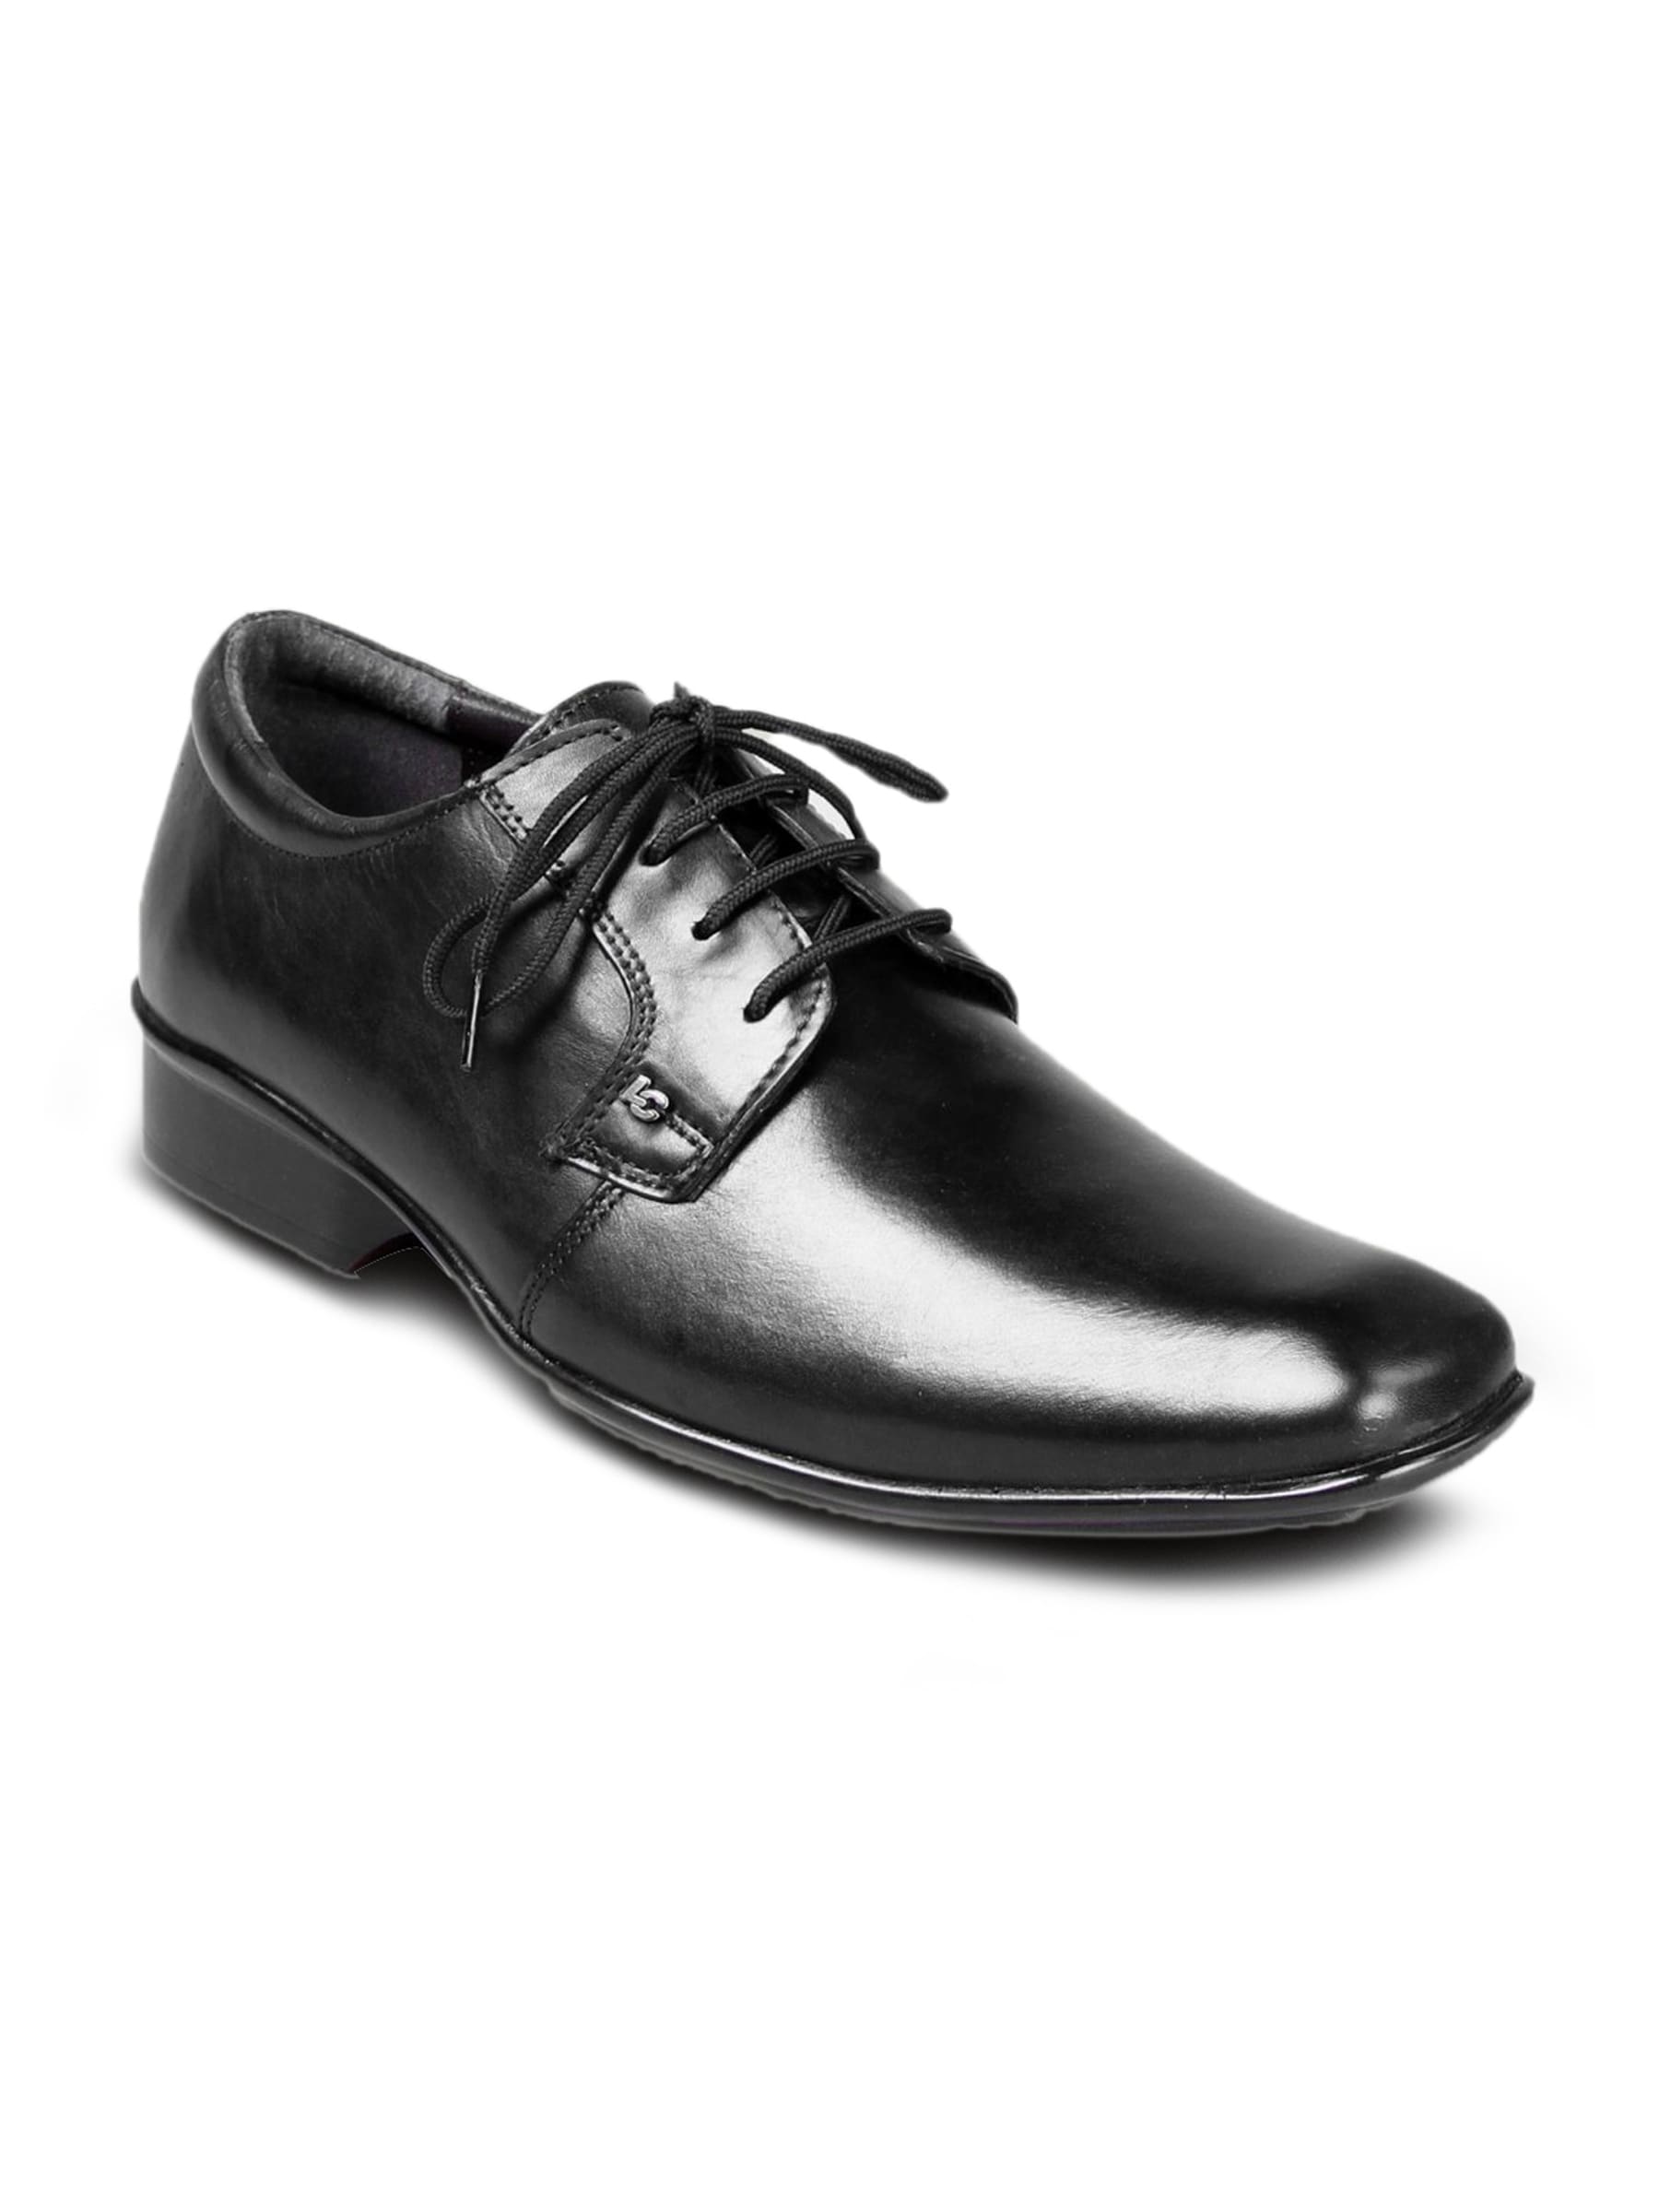 Lee Cooper Men's LC Formal Leather Black Shoe